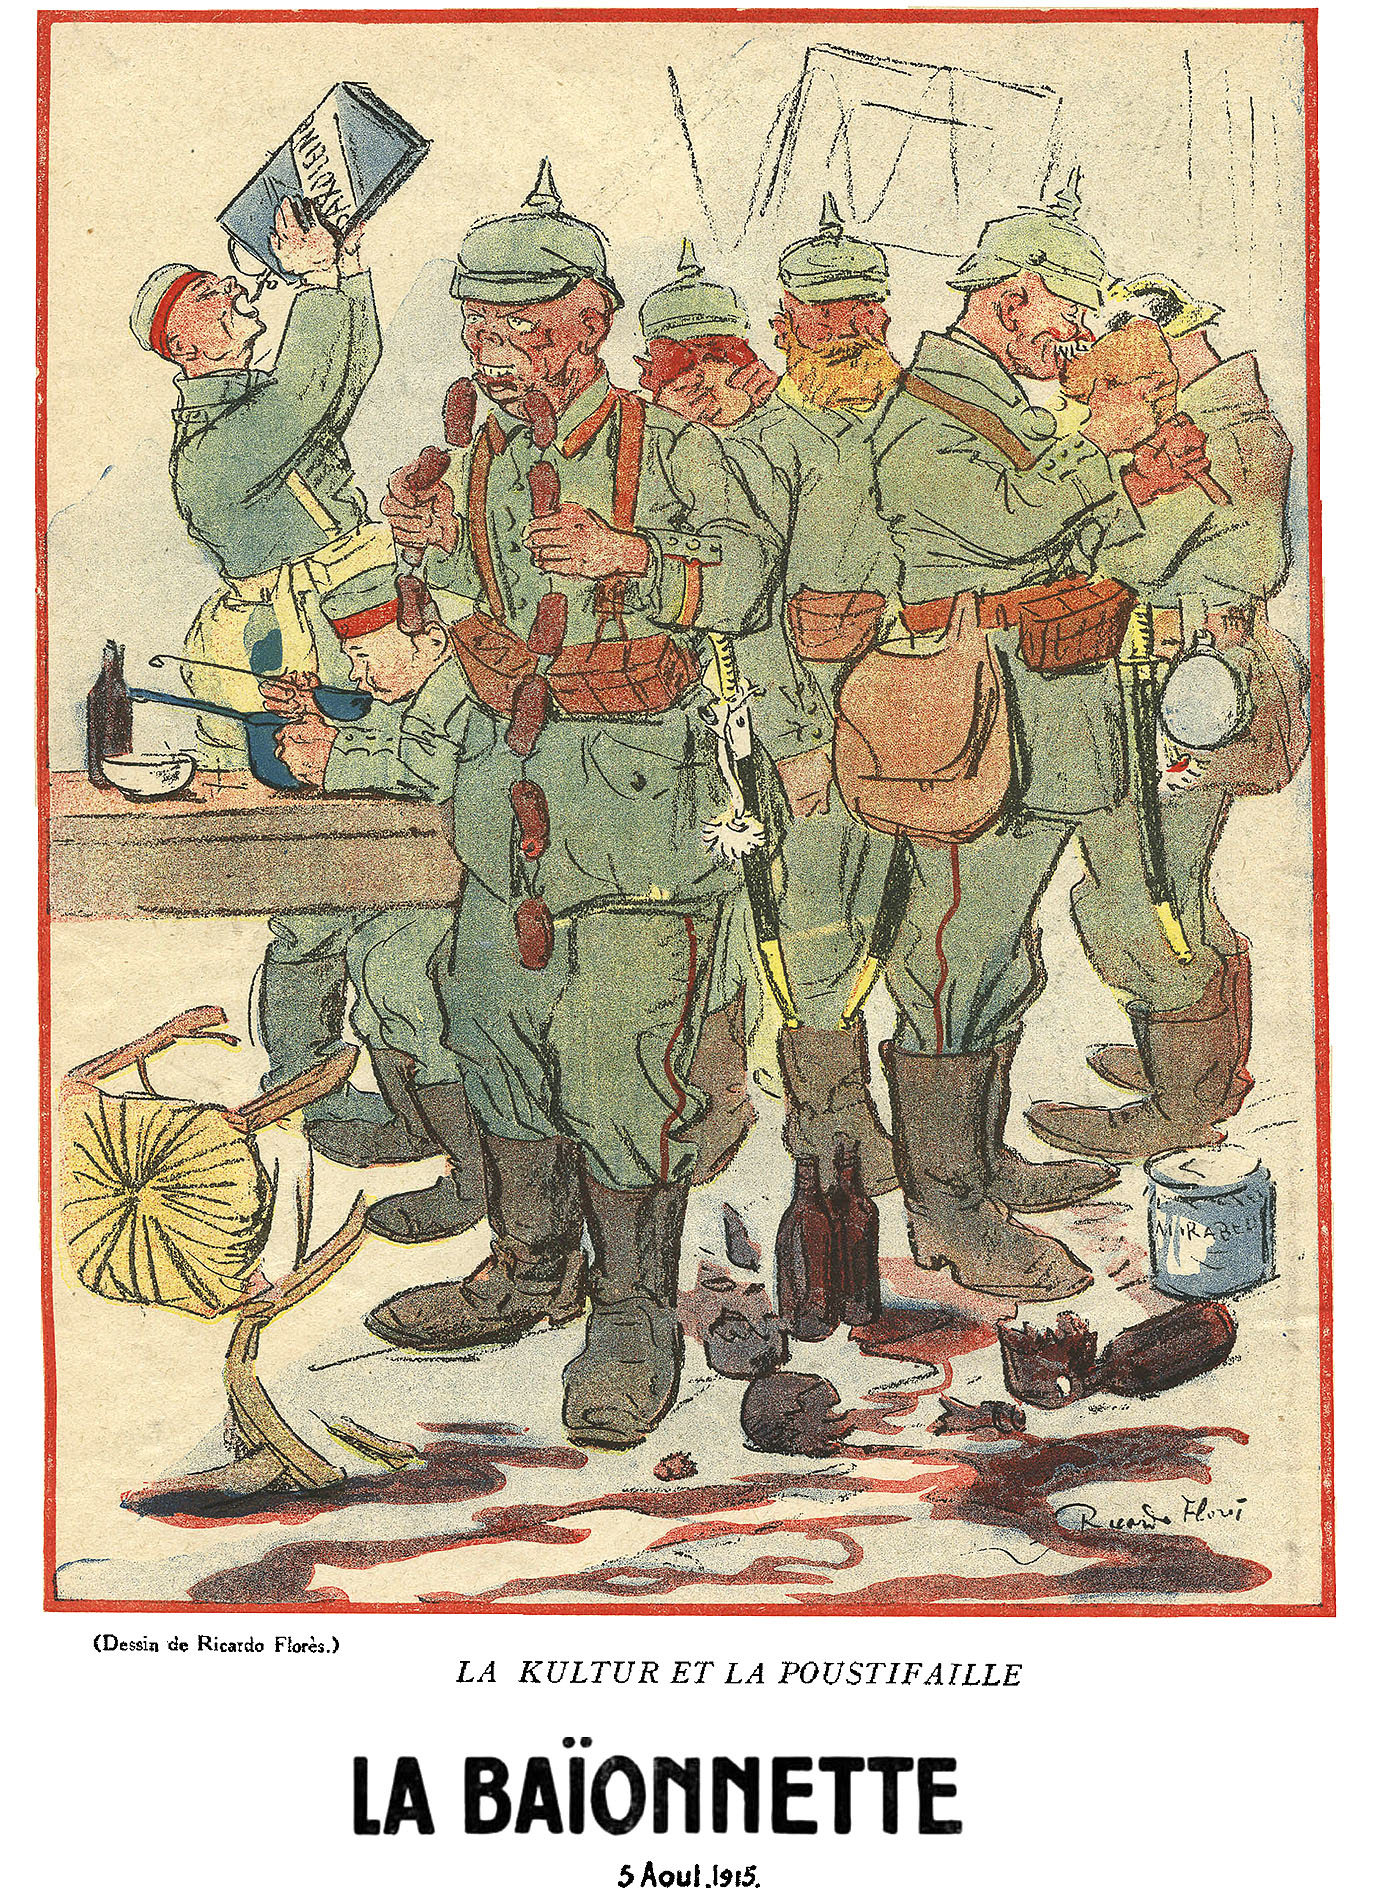 Five French Cartoons (La Baionnette, 1916)